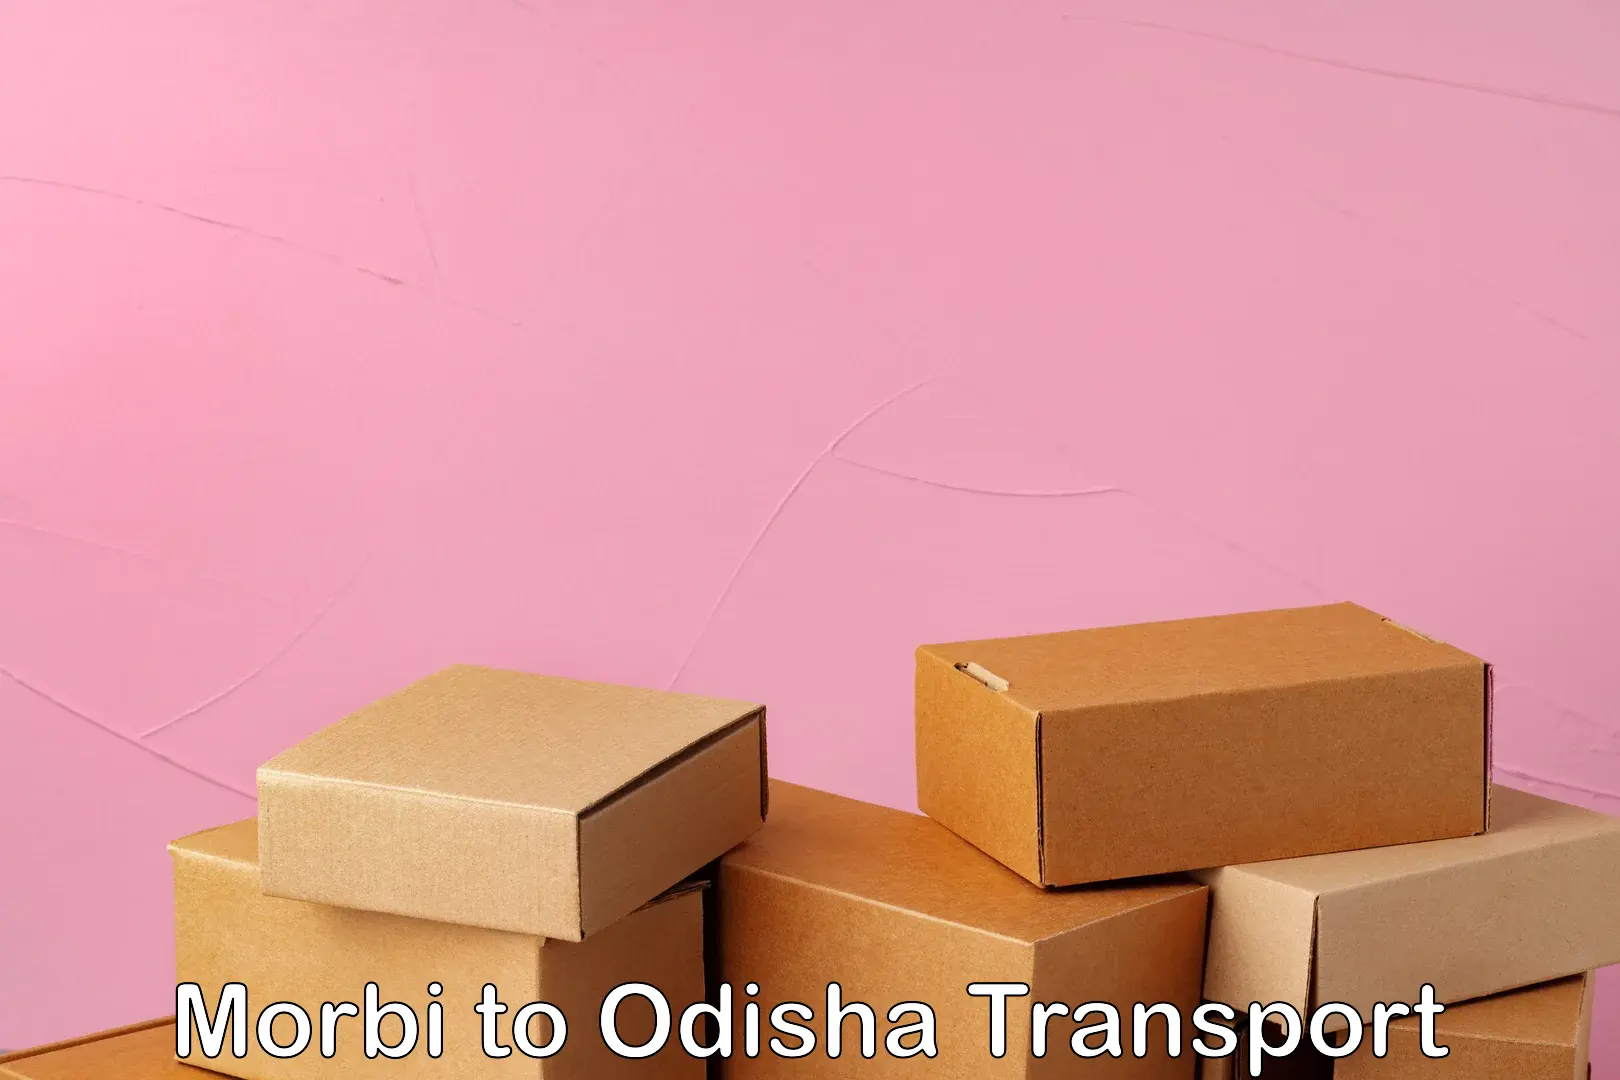 Bike transport service Morbi to Odisha